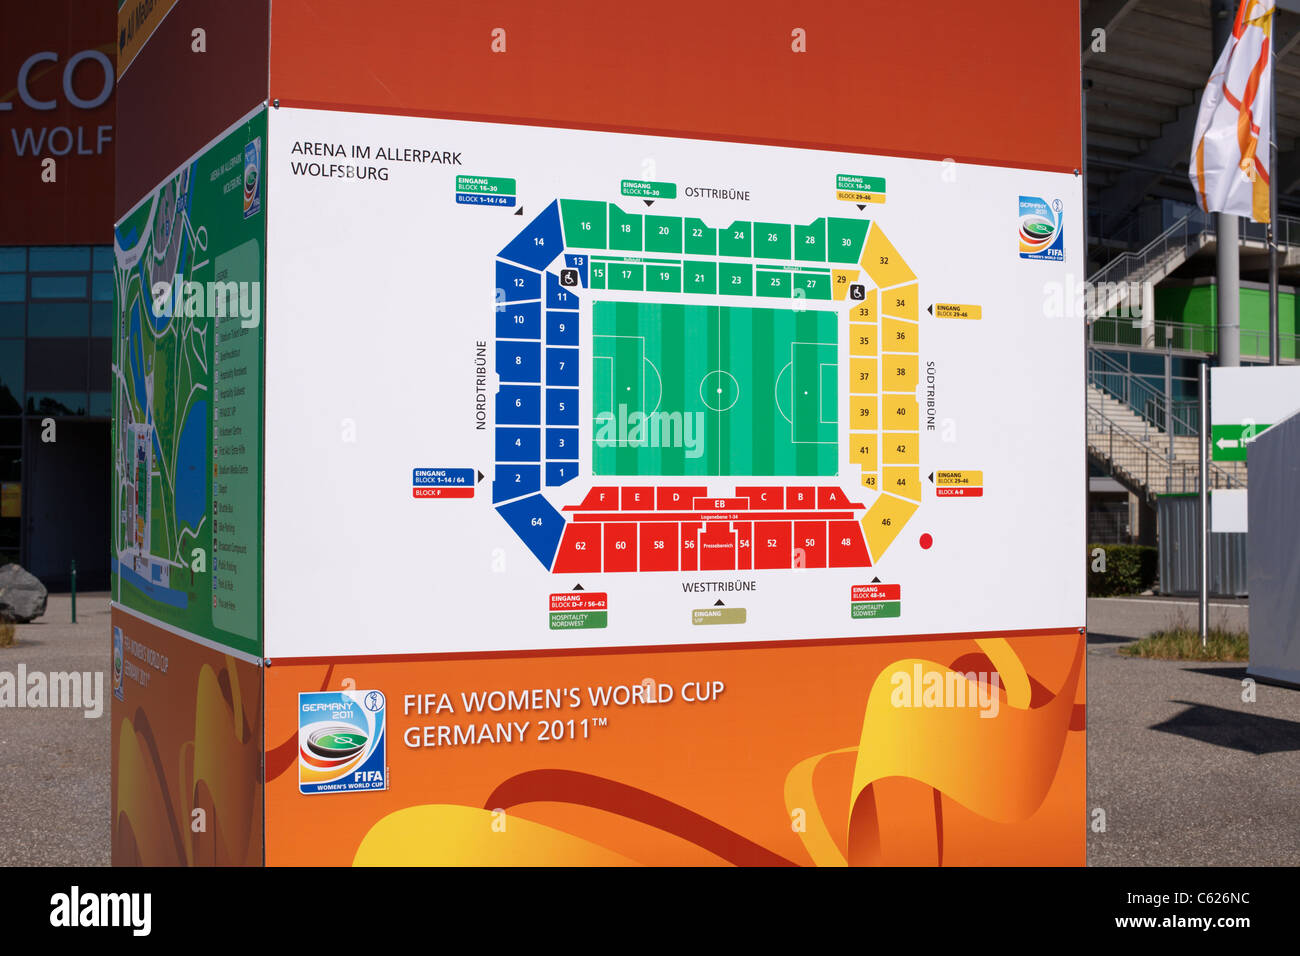 Seating Chart Uf Stadium